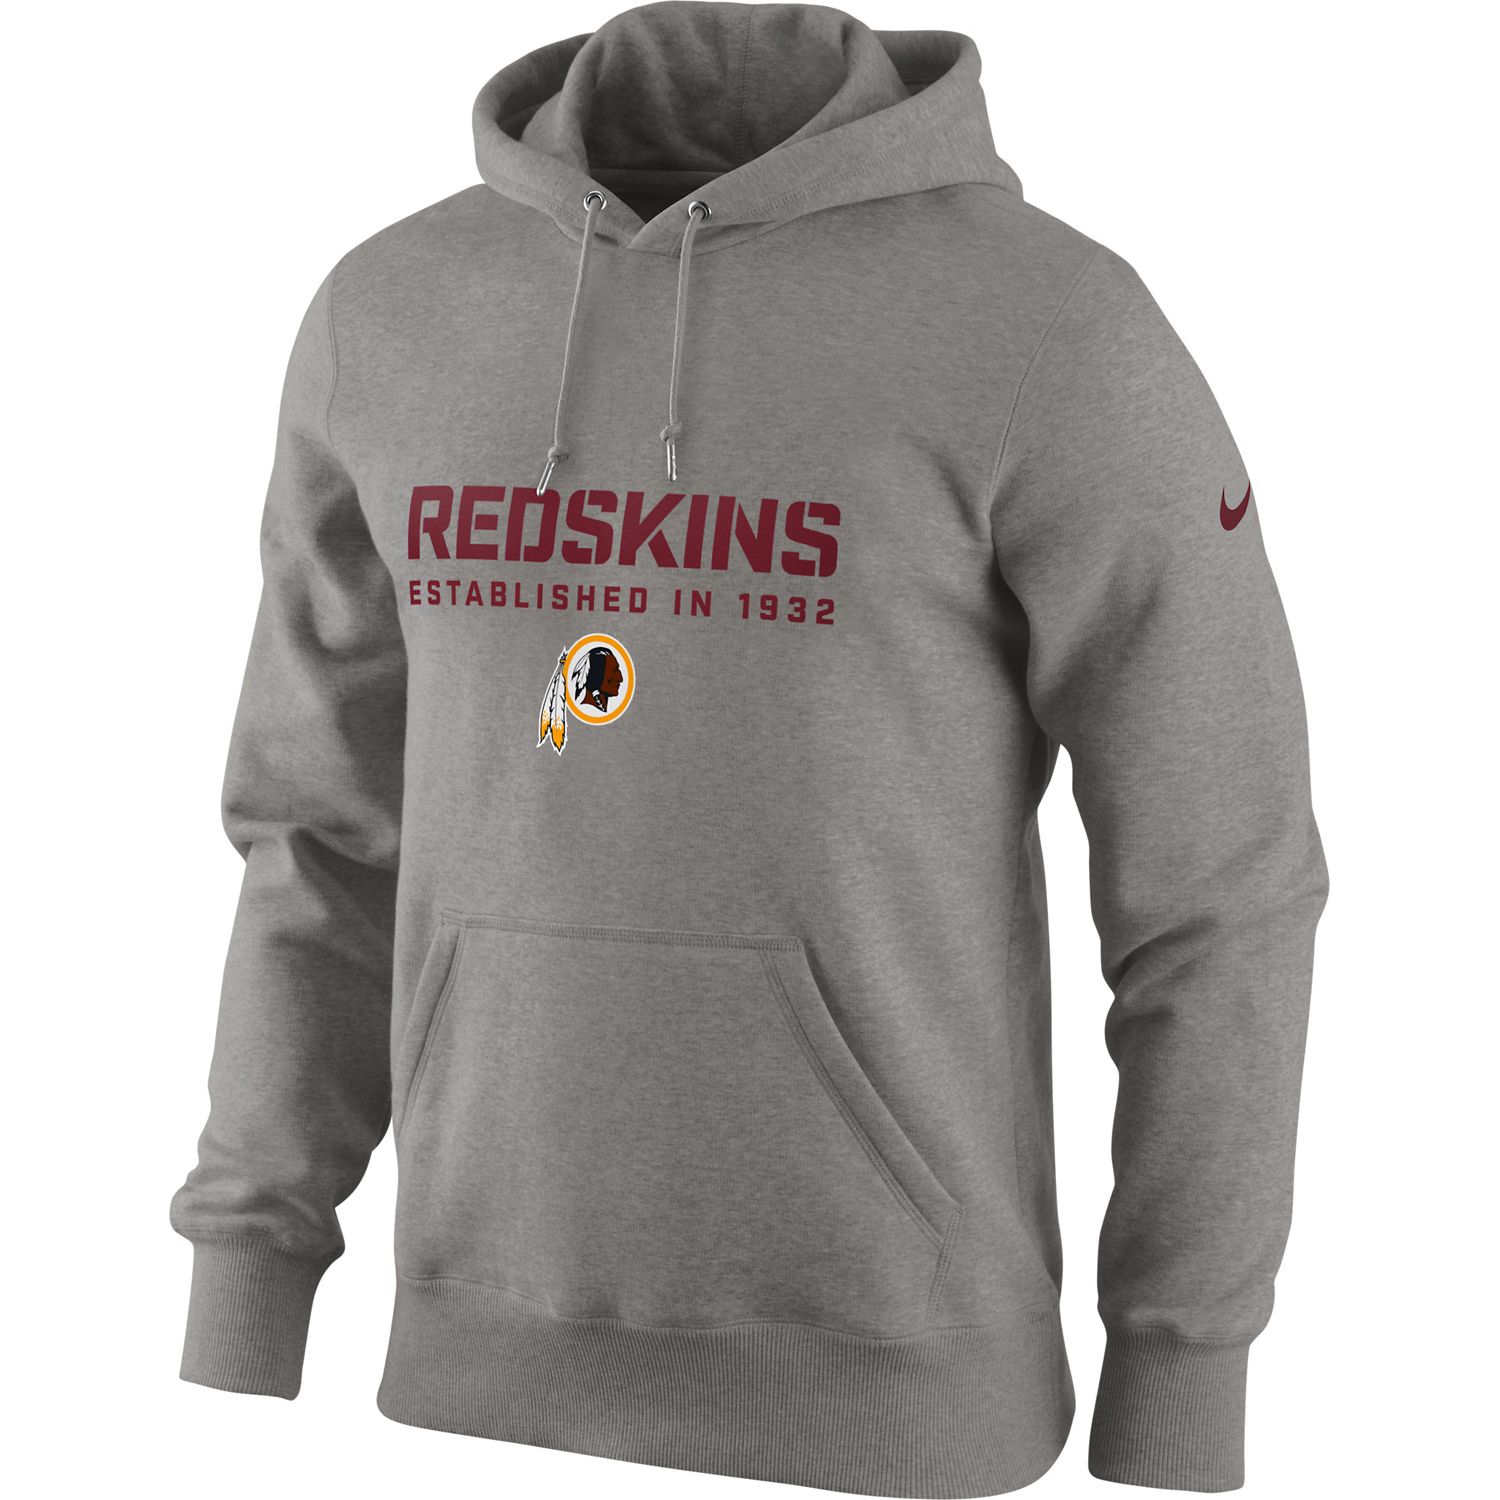 redskins men's hoodie